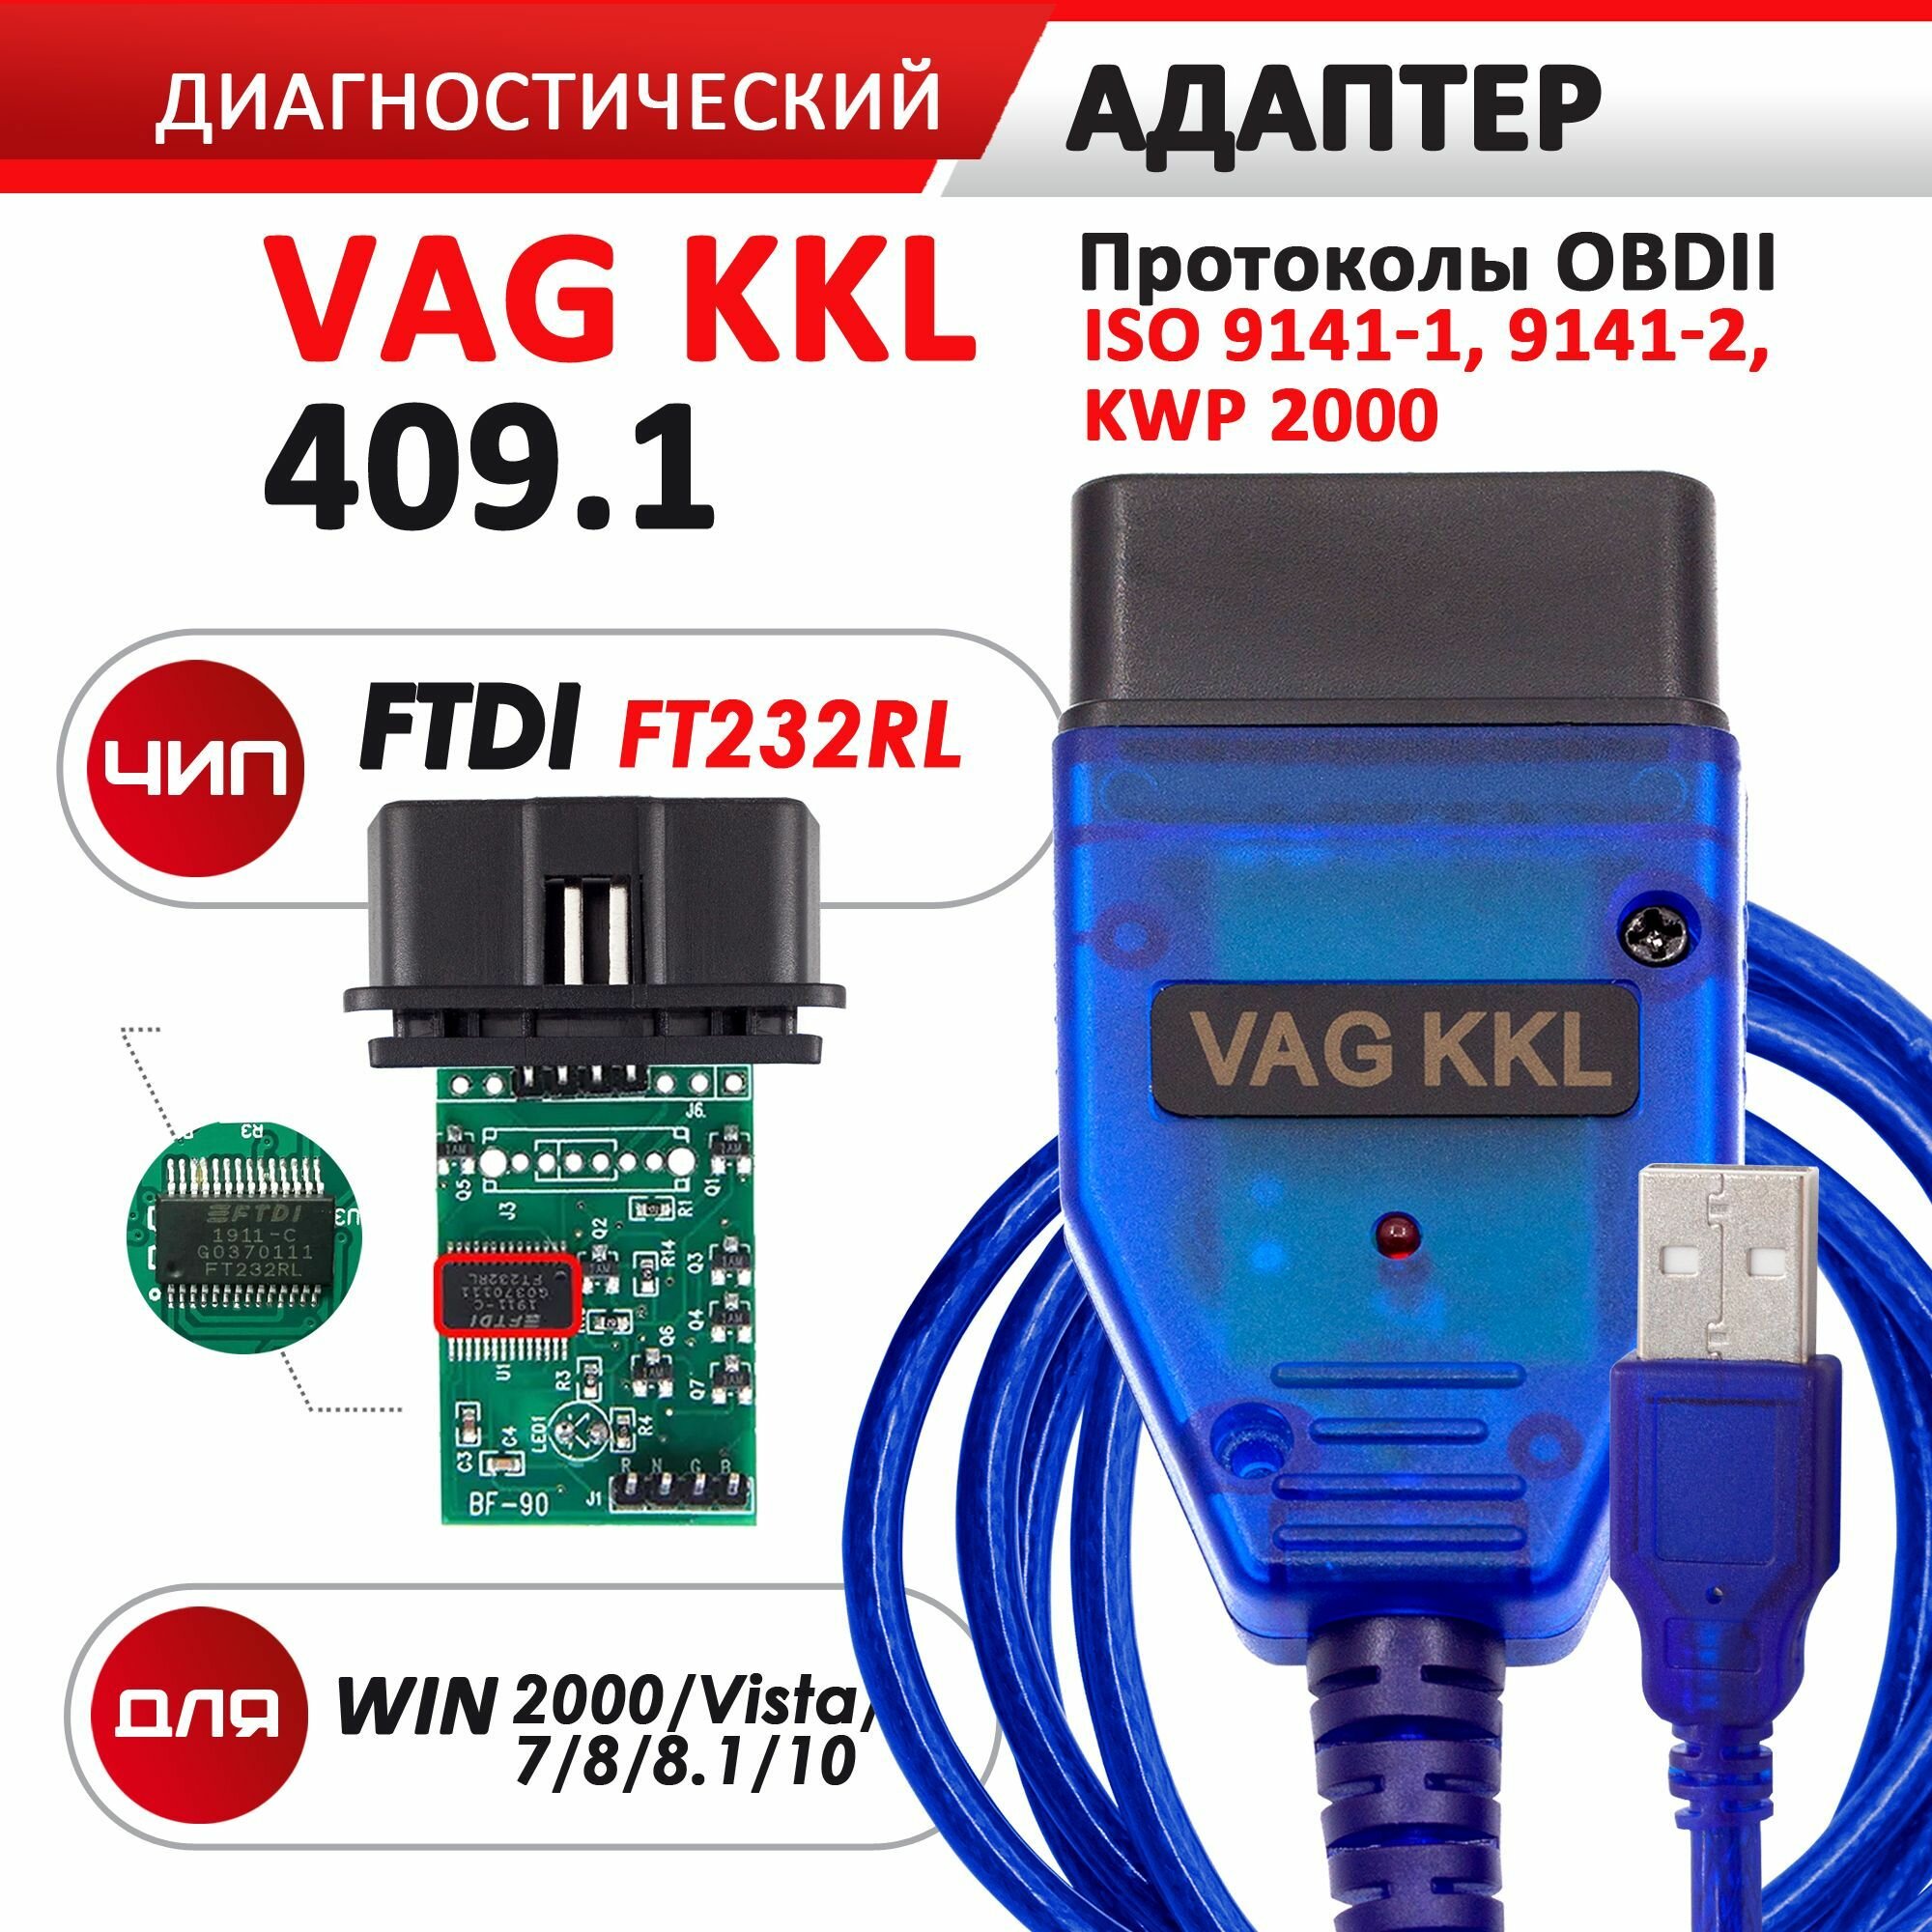 Автосканер VAG COM KKL 409.1 чип FTDI FT232RL мультимарочный сканер для Audi, Volkswagen, Skoda, Seat, Ваз, Газ и Daewoo, Mercedes